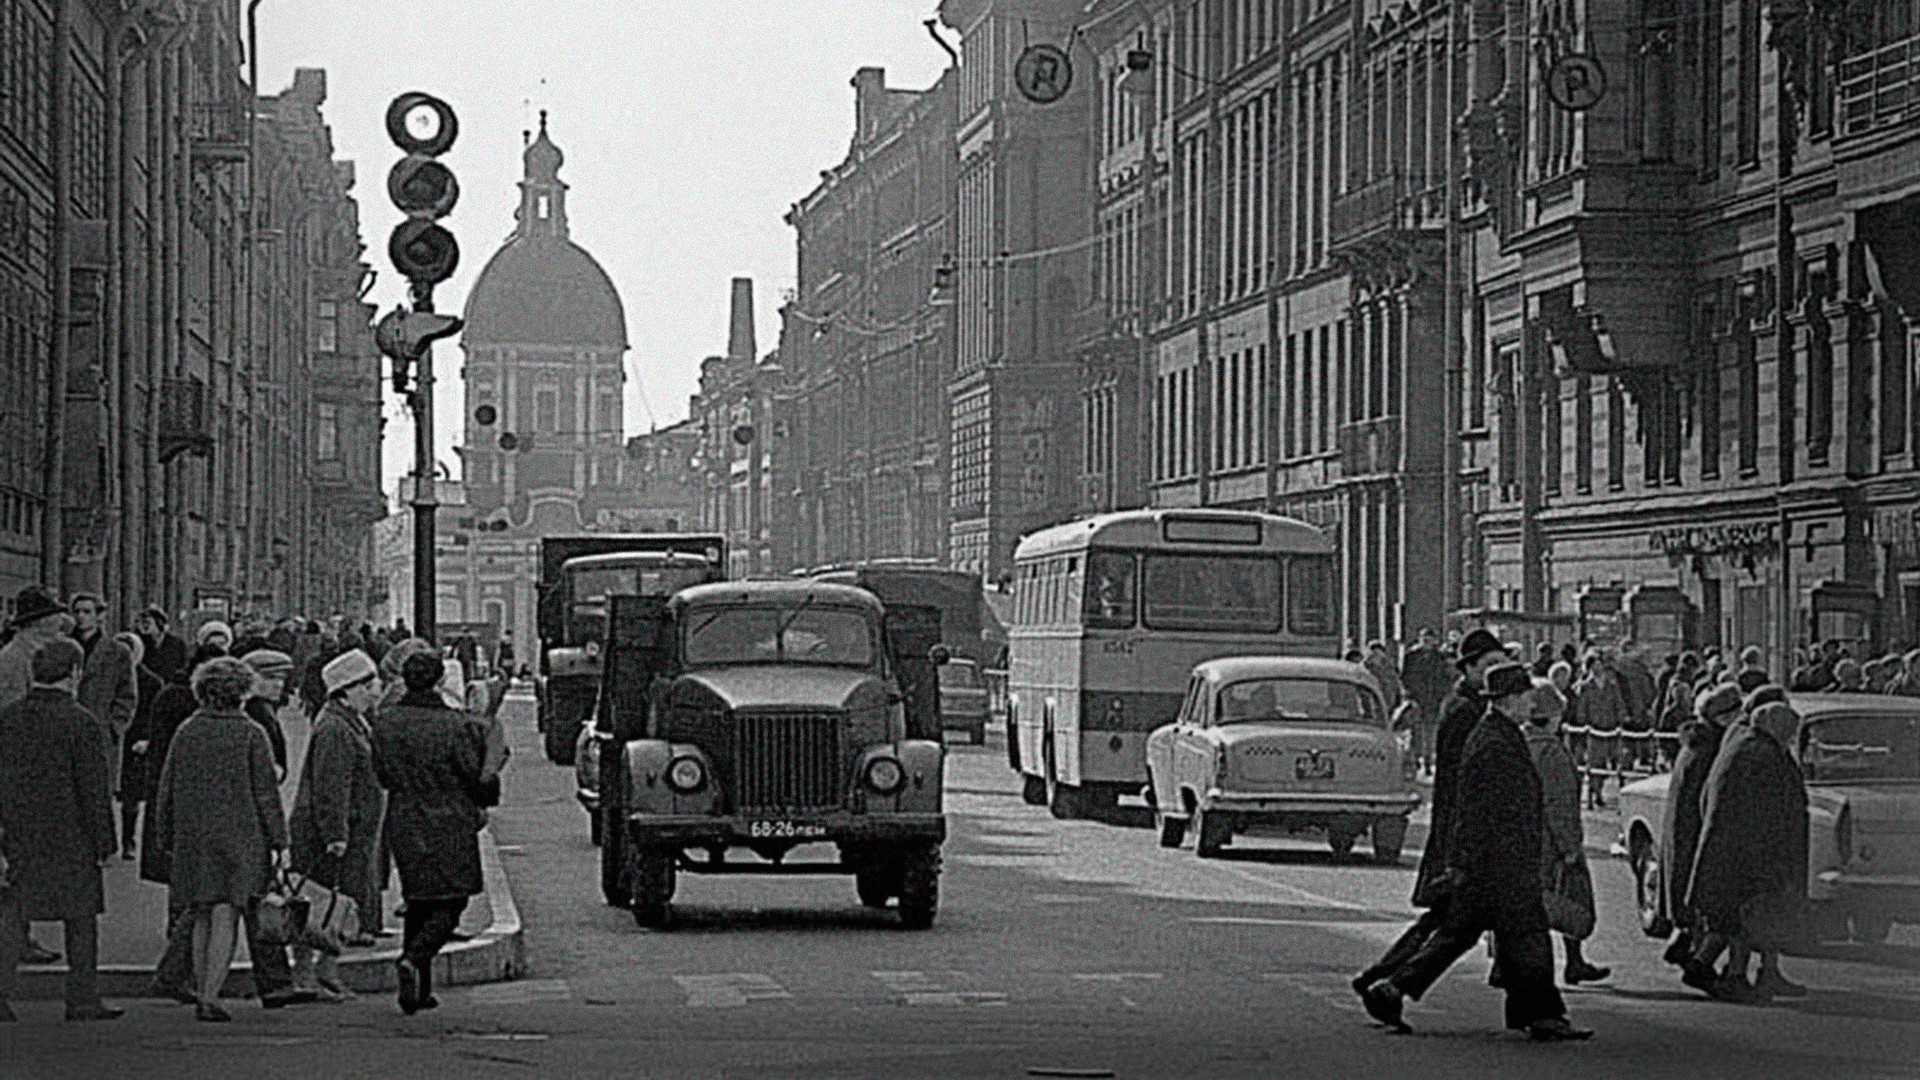 Санкт петербург в 1950 году